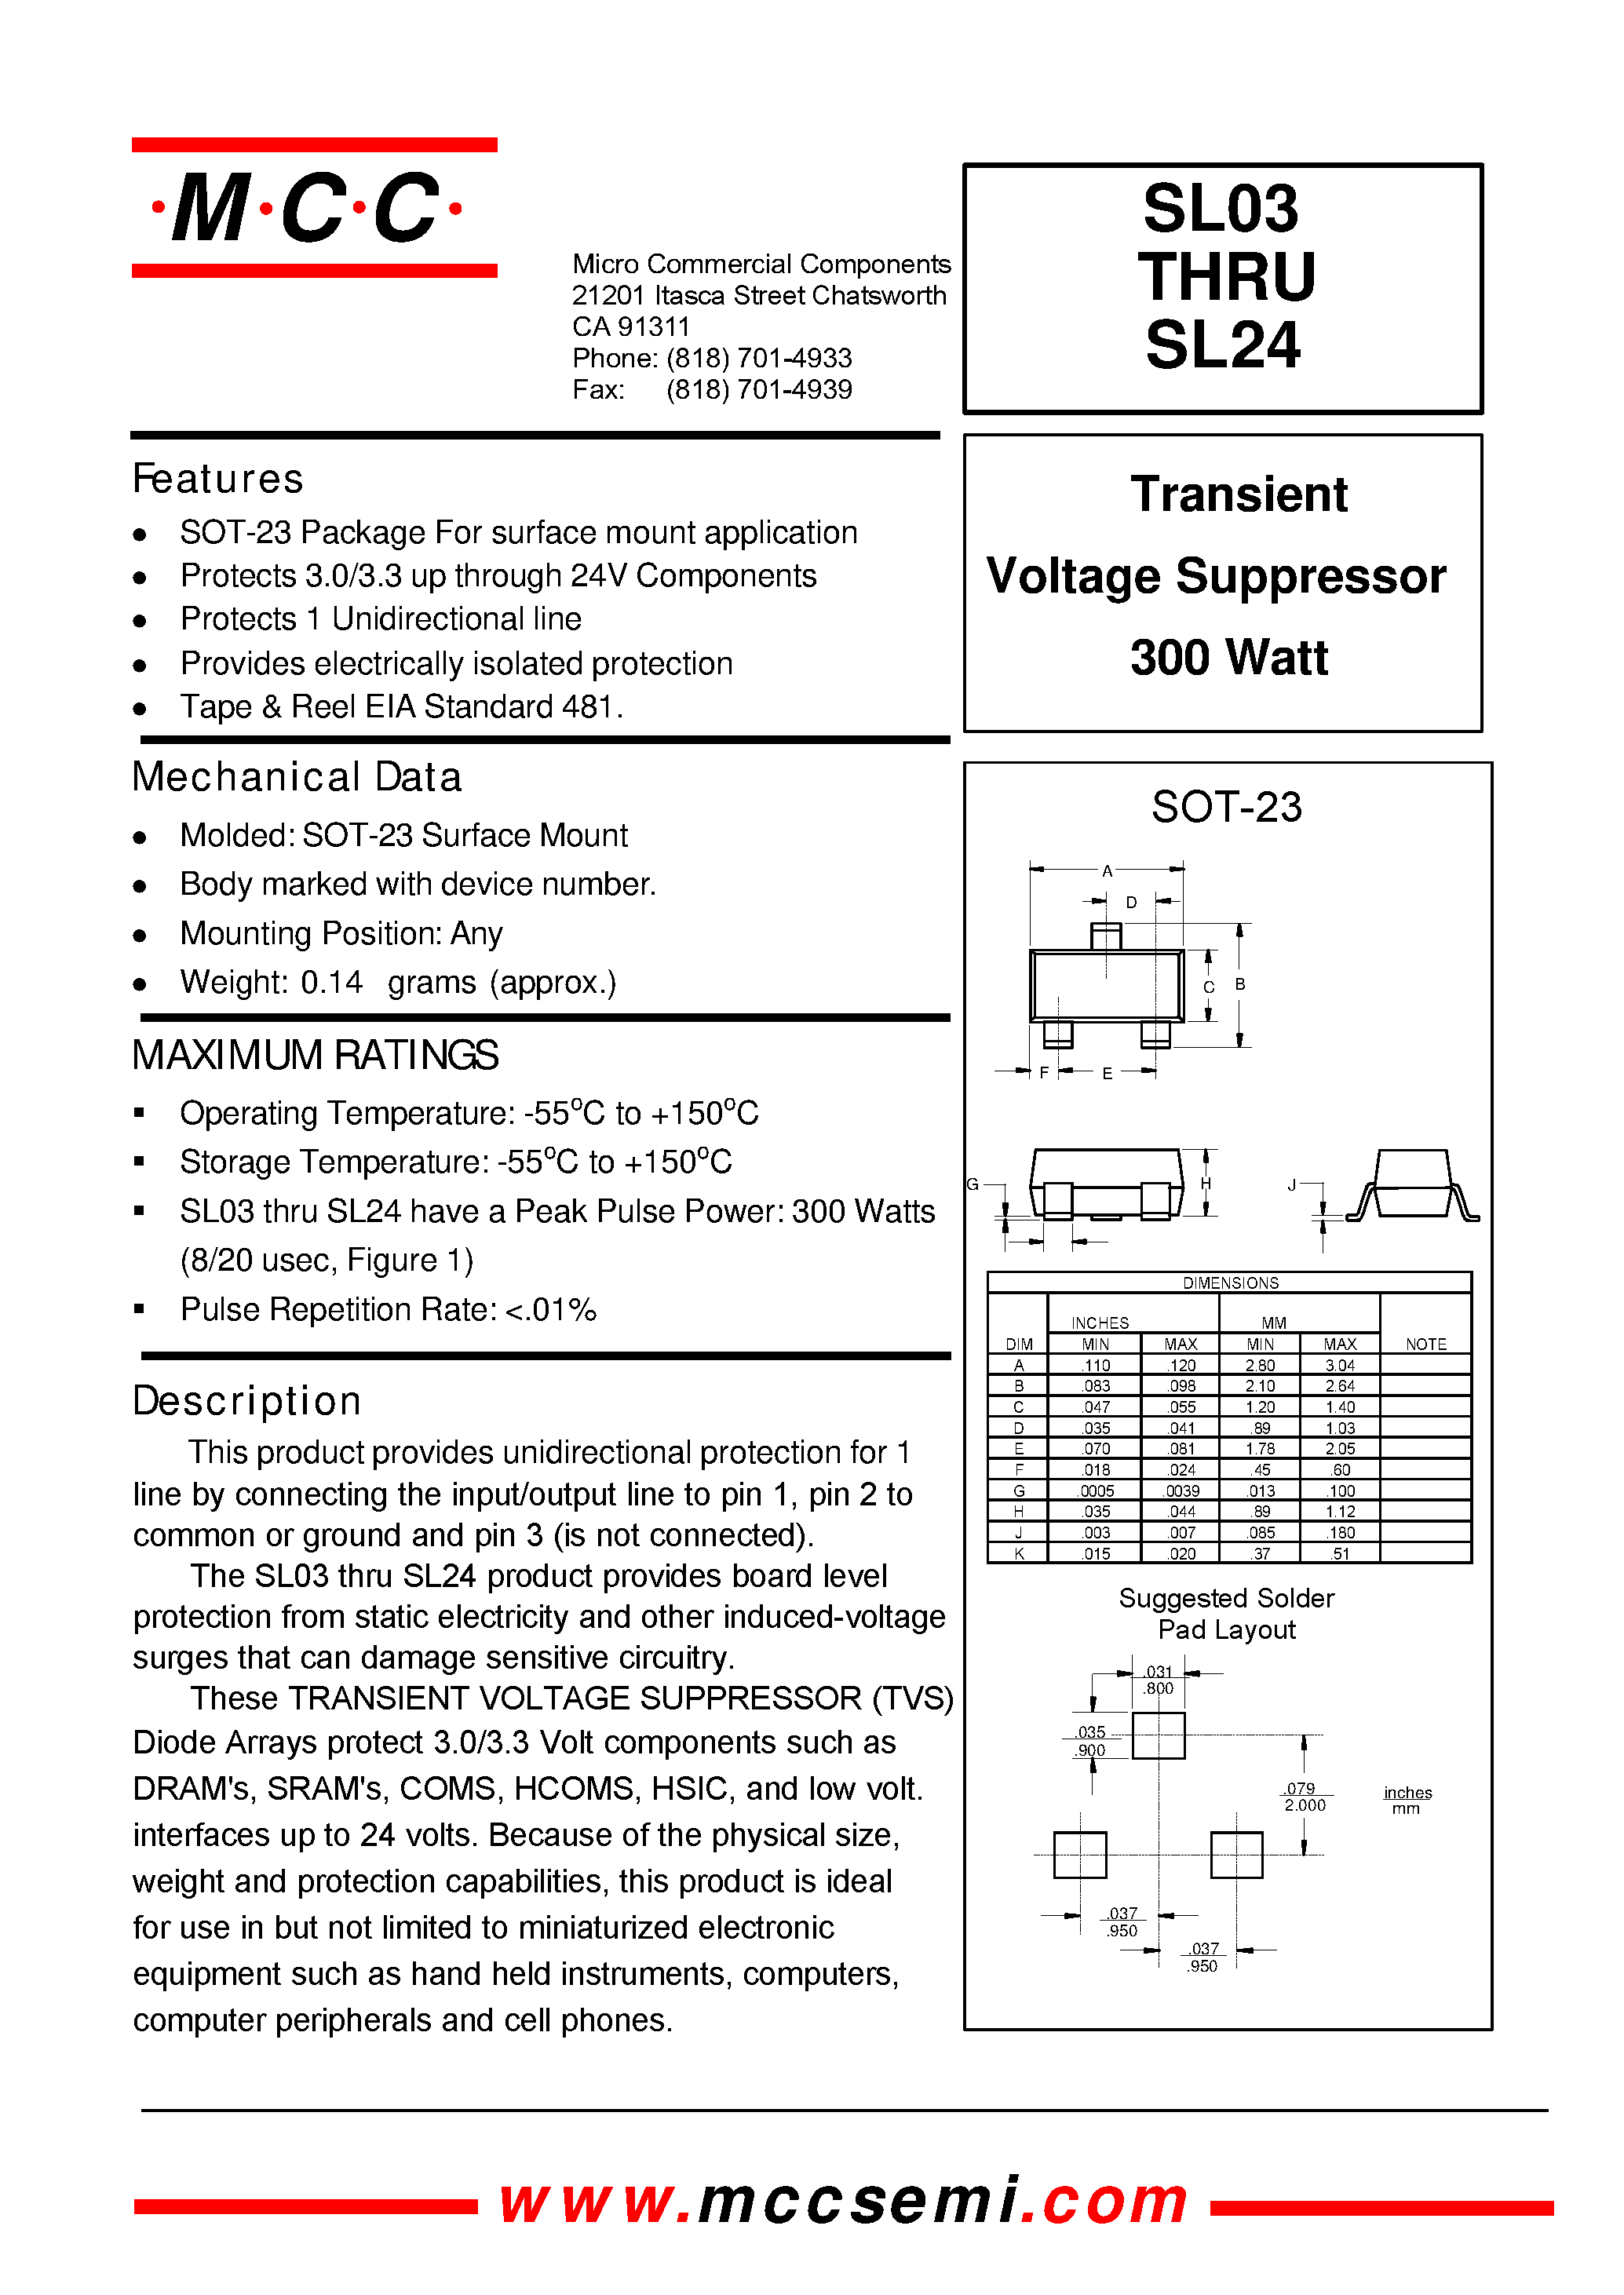 Datasheet SL24 - Transient Voltage Suppressor 300 Watt page 1